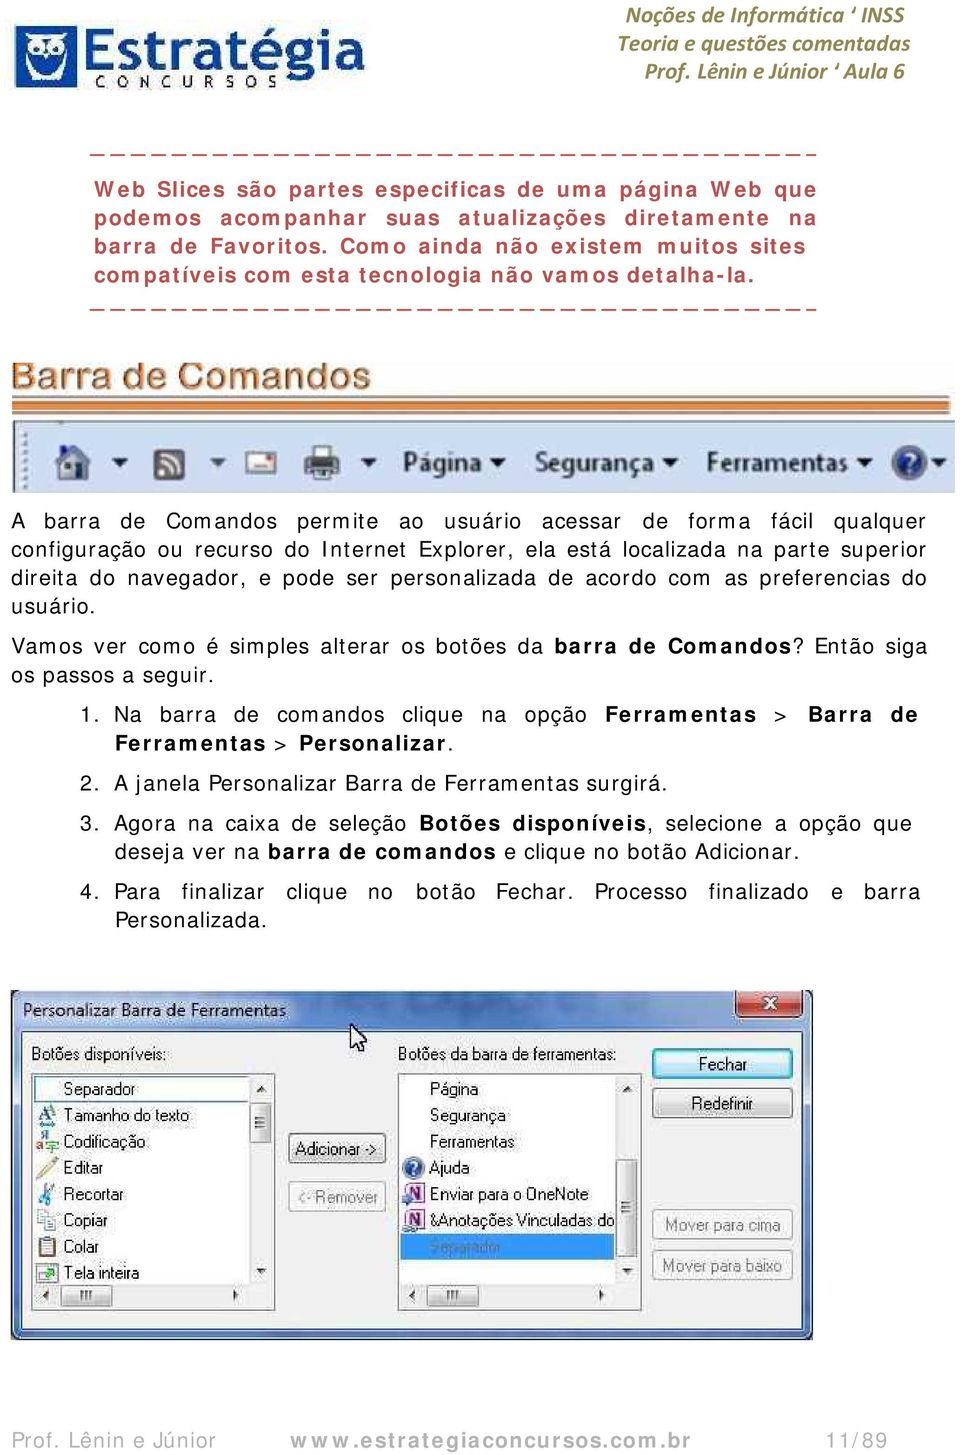 A barra de Comandos permite ao usuário acessar de forma fácil qualquer configuração ou recurso do Internet Explorer, ela está localizada na parte superior direita do navegador, e pode ser